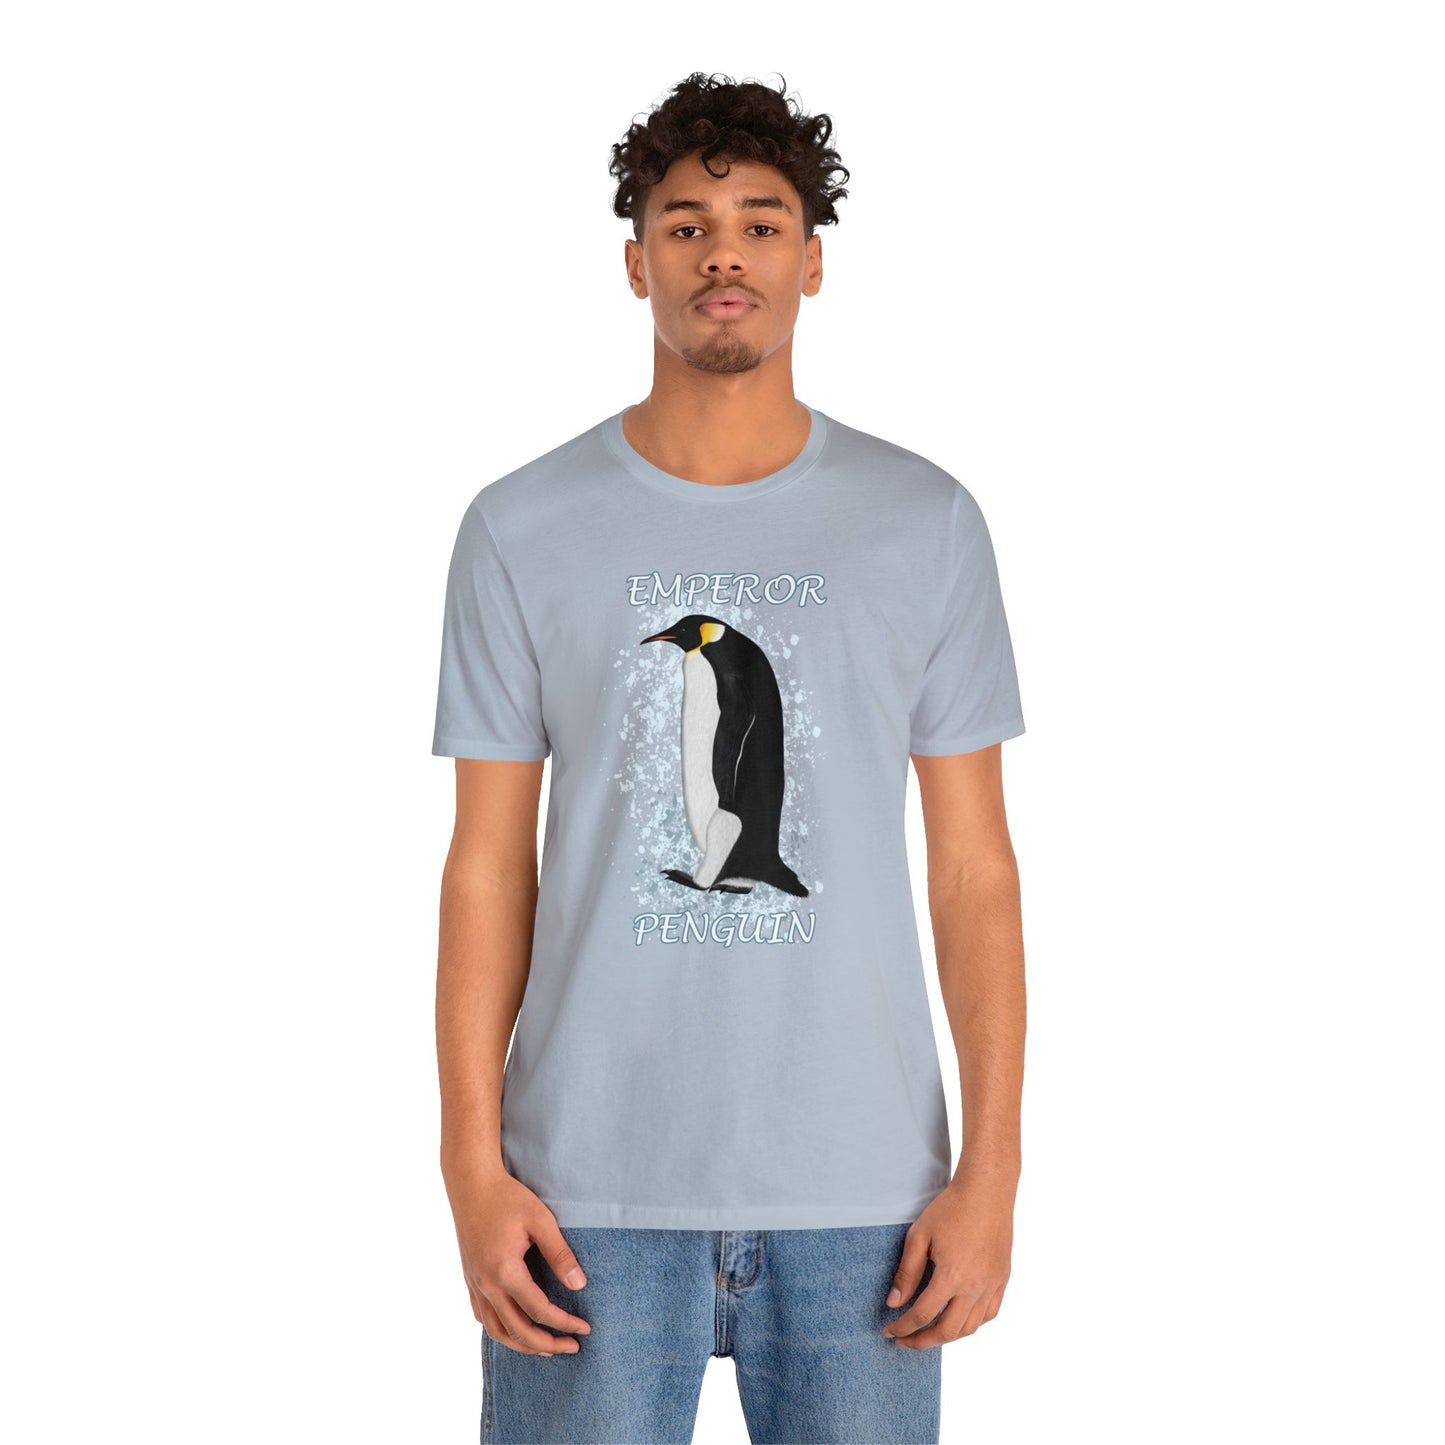 Emperor Penguin Bird Tee